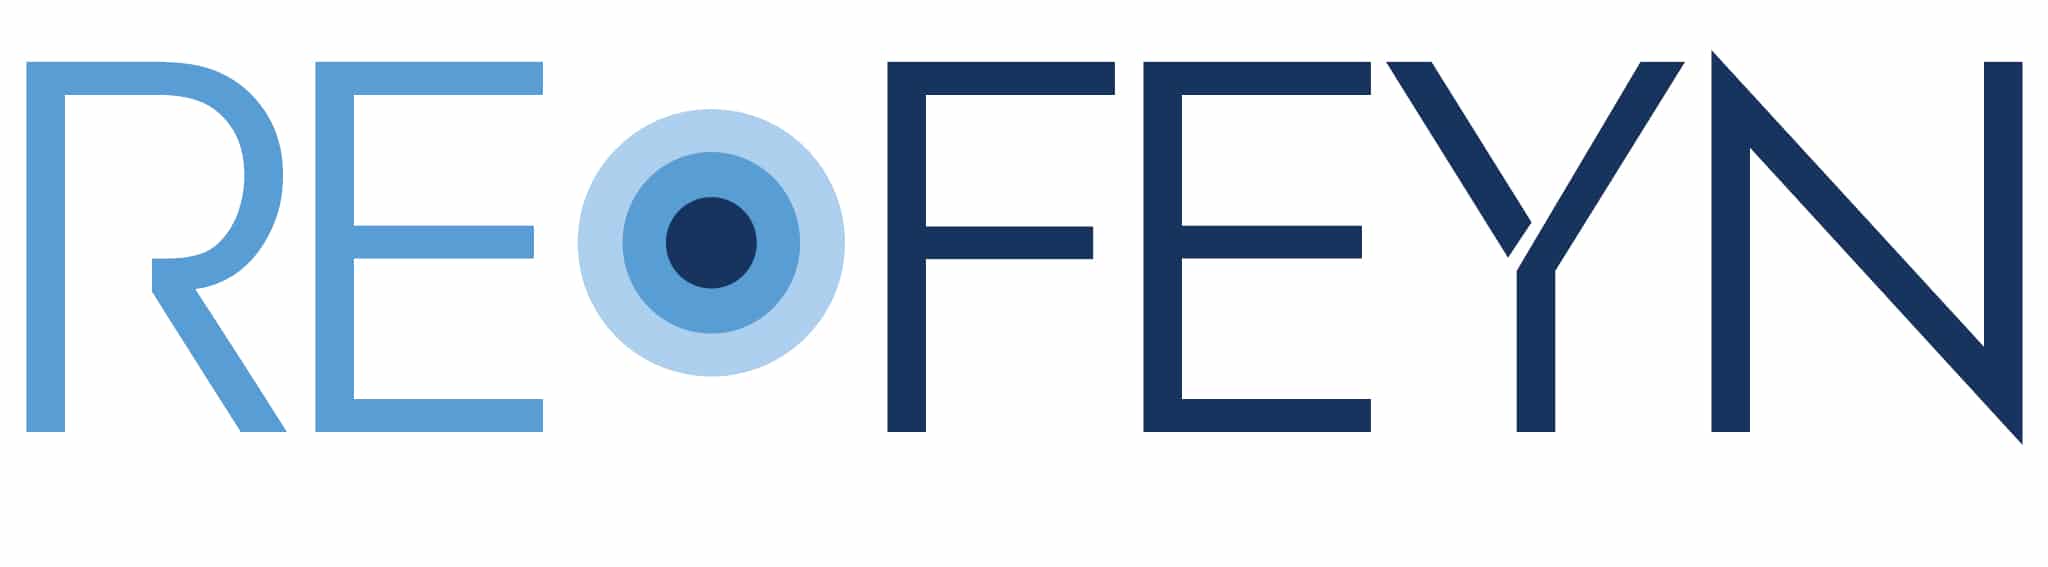 refeyn-logo.jpg